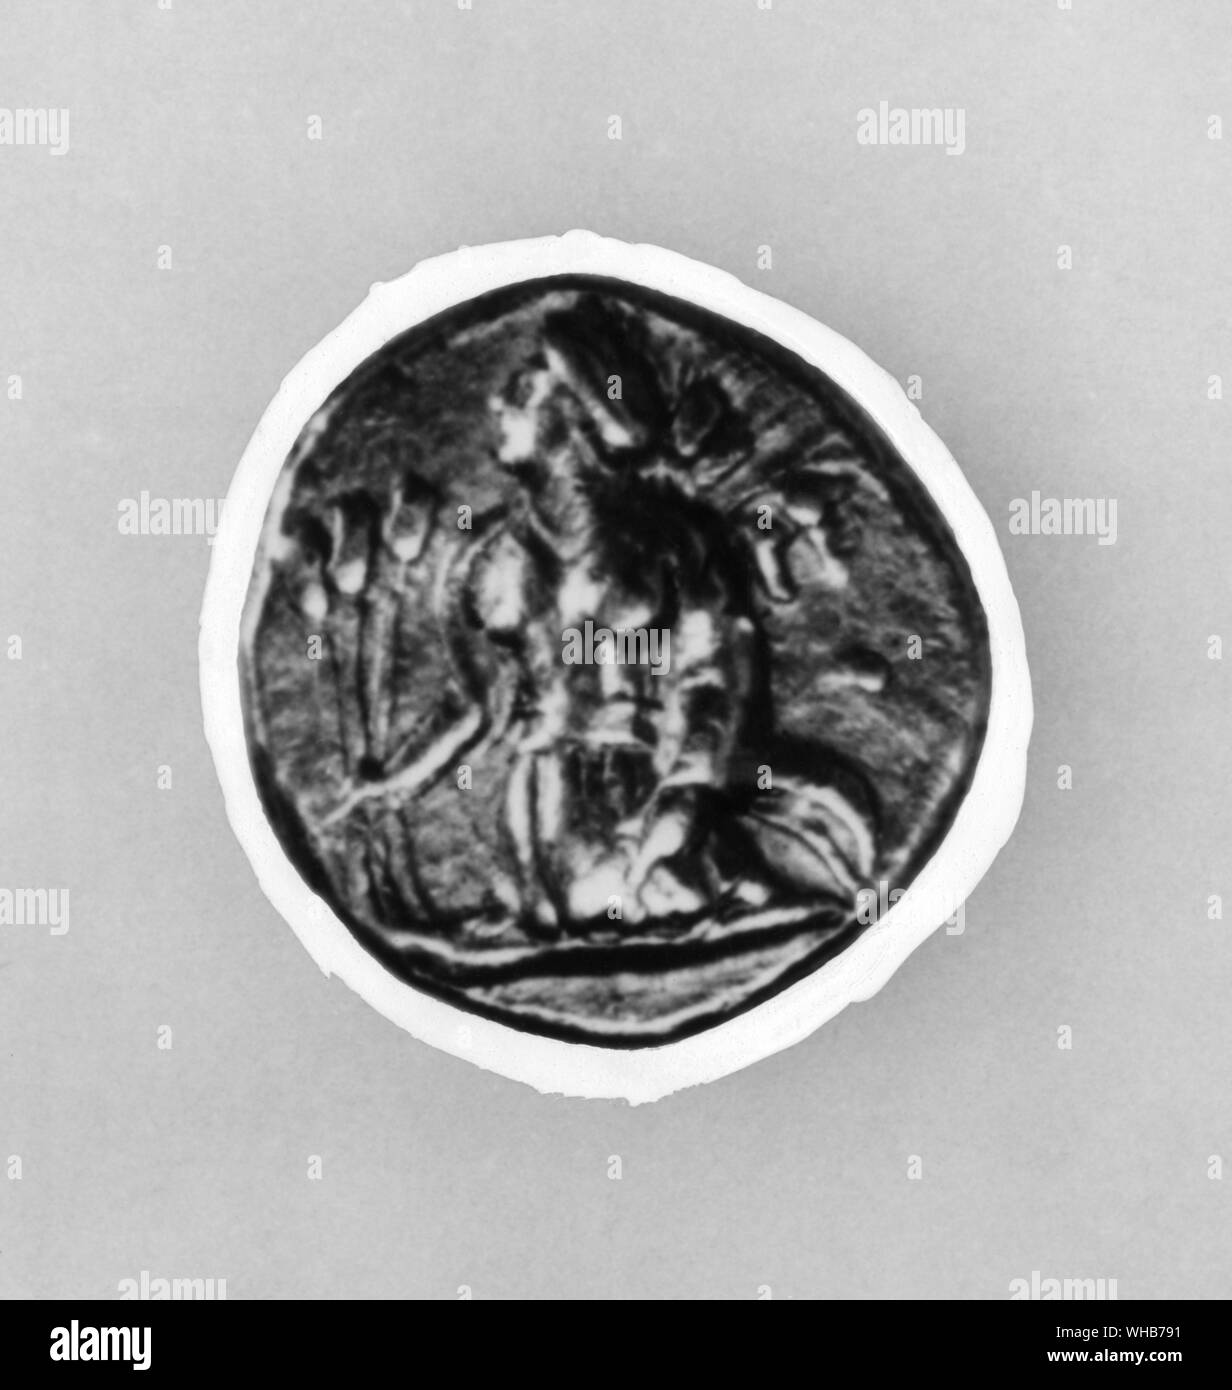 Les esprits de la maïs. La jeune fille de Perséphone maïs sort de terre tenant trois épis de maïs à partir de la monnaie grecque Lampascu Banque D'Images